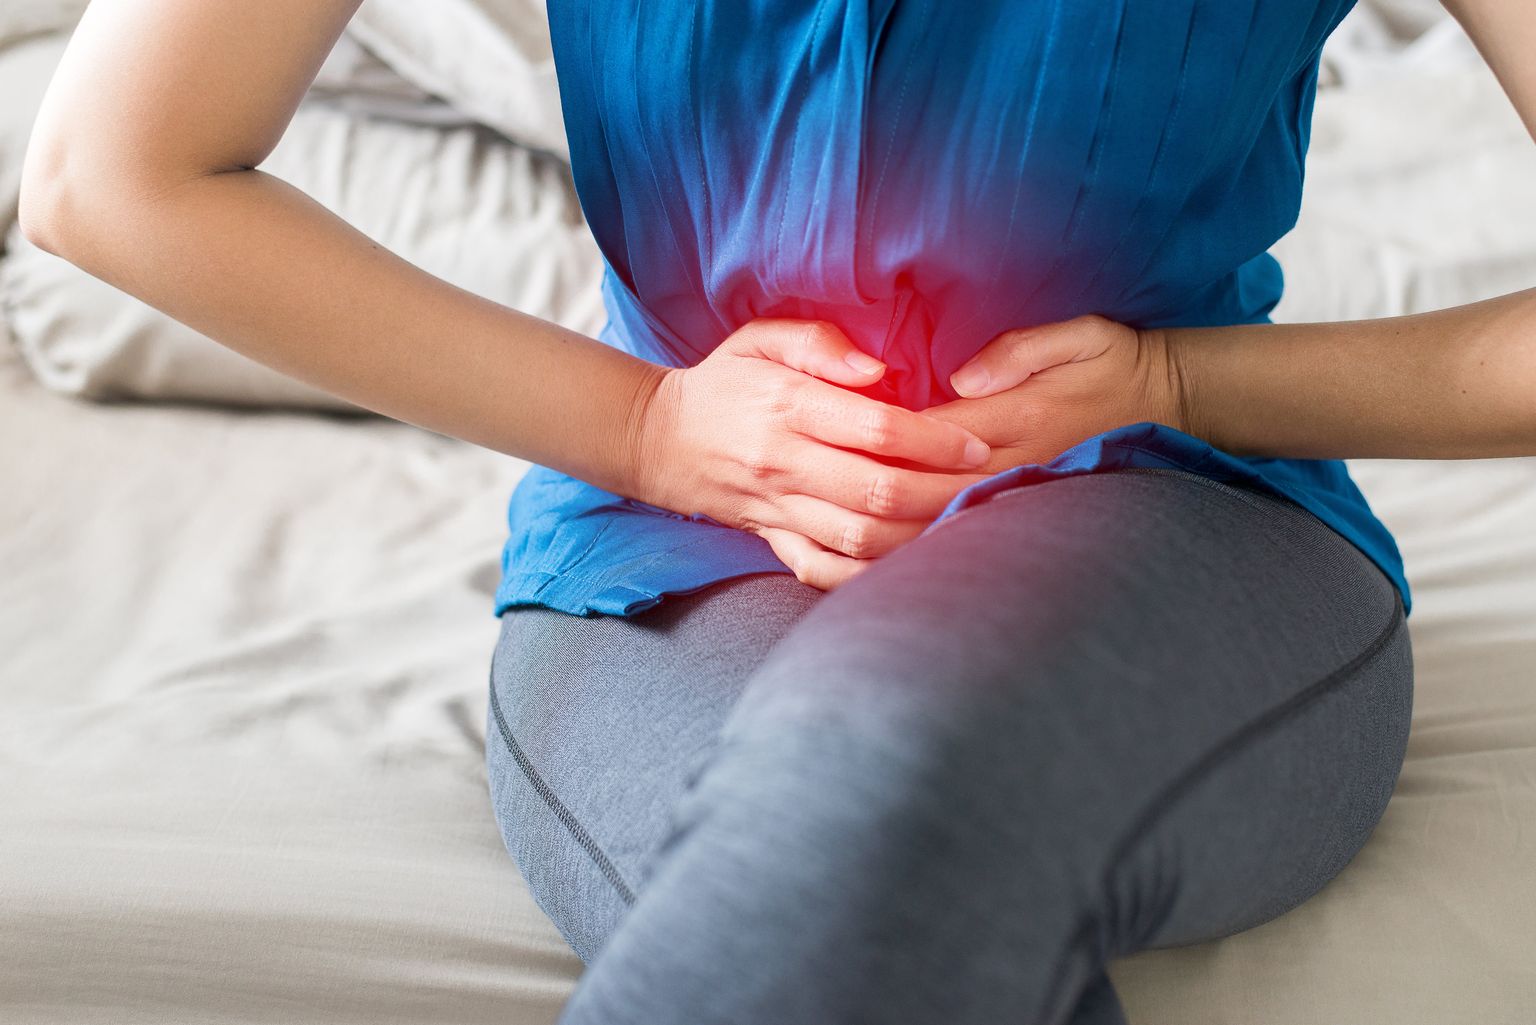 Una donna si siede e tiene le mani sul basso ventre per rappresentare simbolicamente il dolore mestruale.